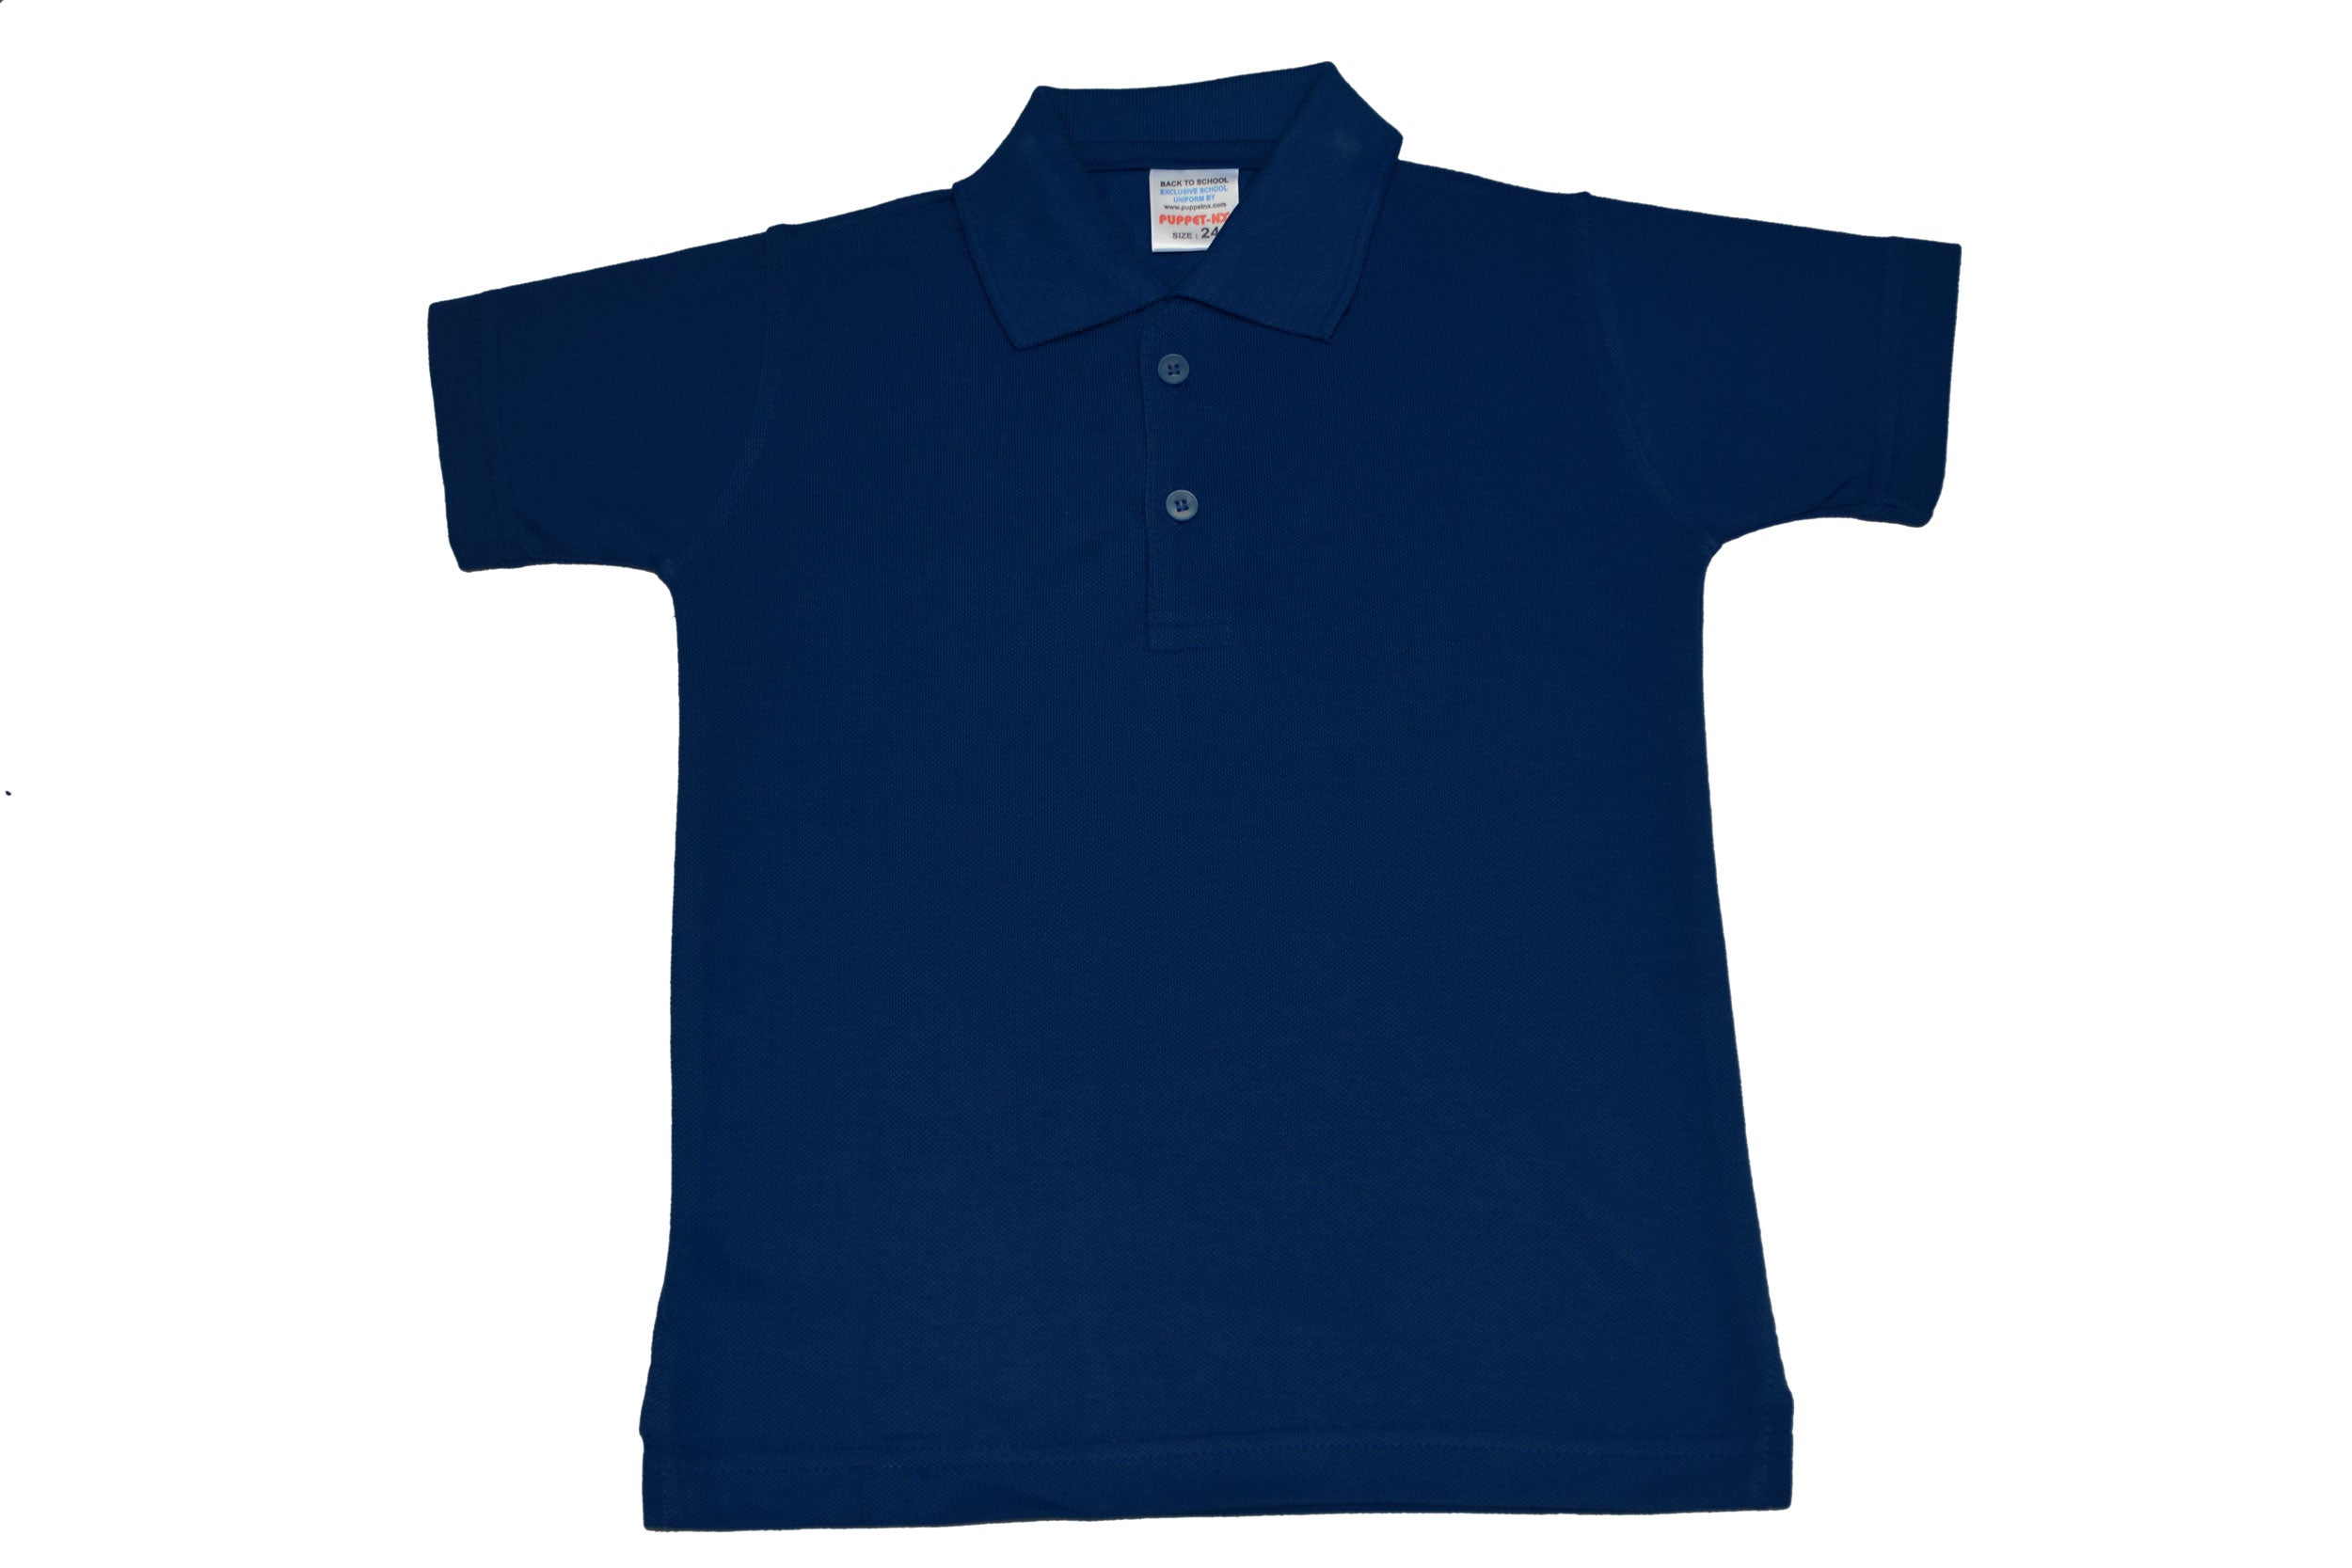 Navy Blue Collar T-Shirt